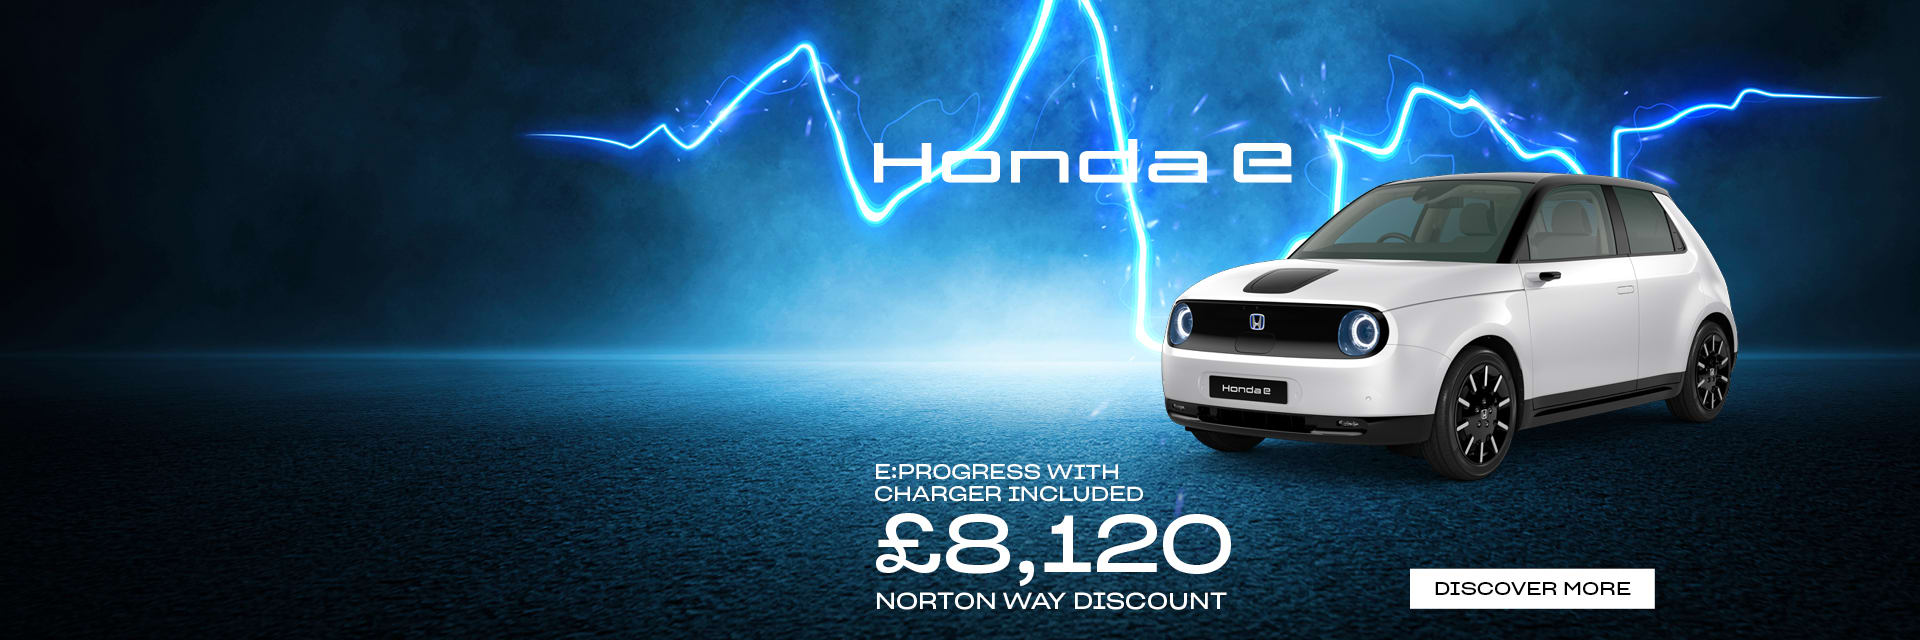 Honda e offers